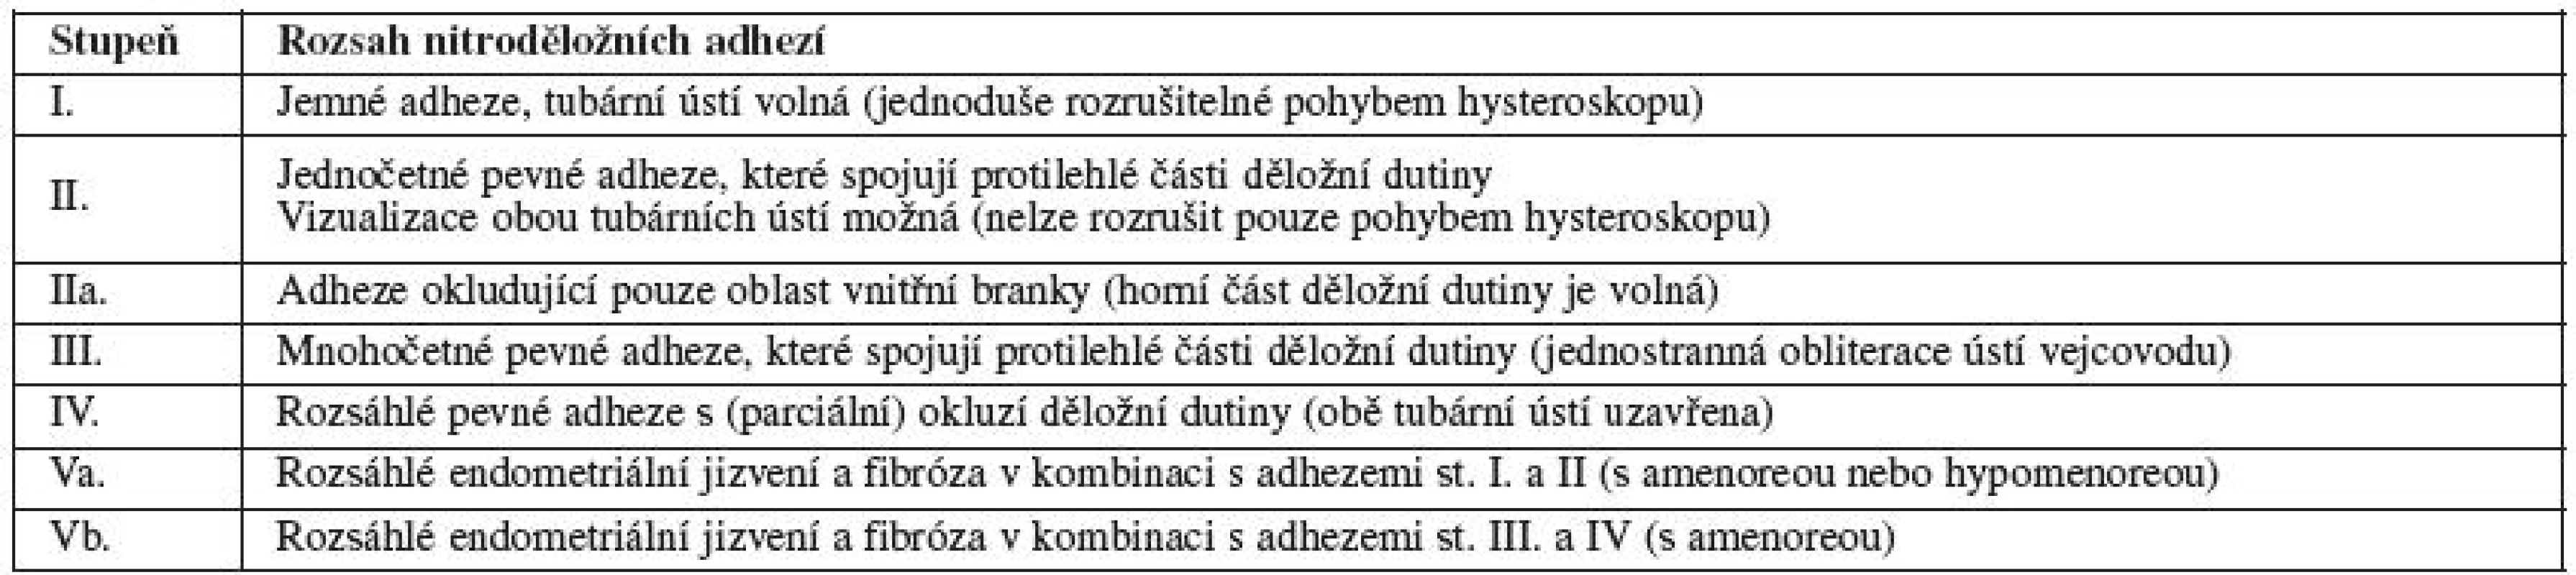 Klasifikace nitroděložních adhezí podle European Society for Gynecologic Endoscopy (ESGE, 1995)